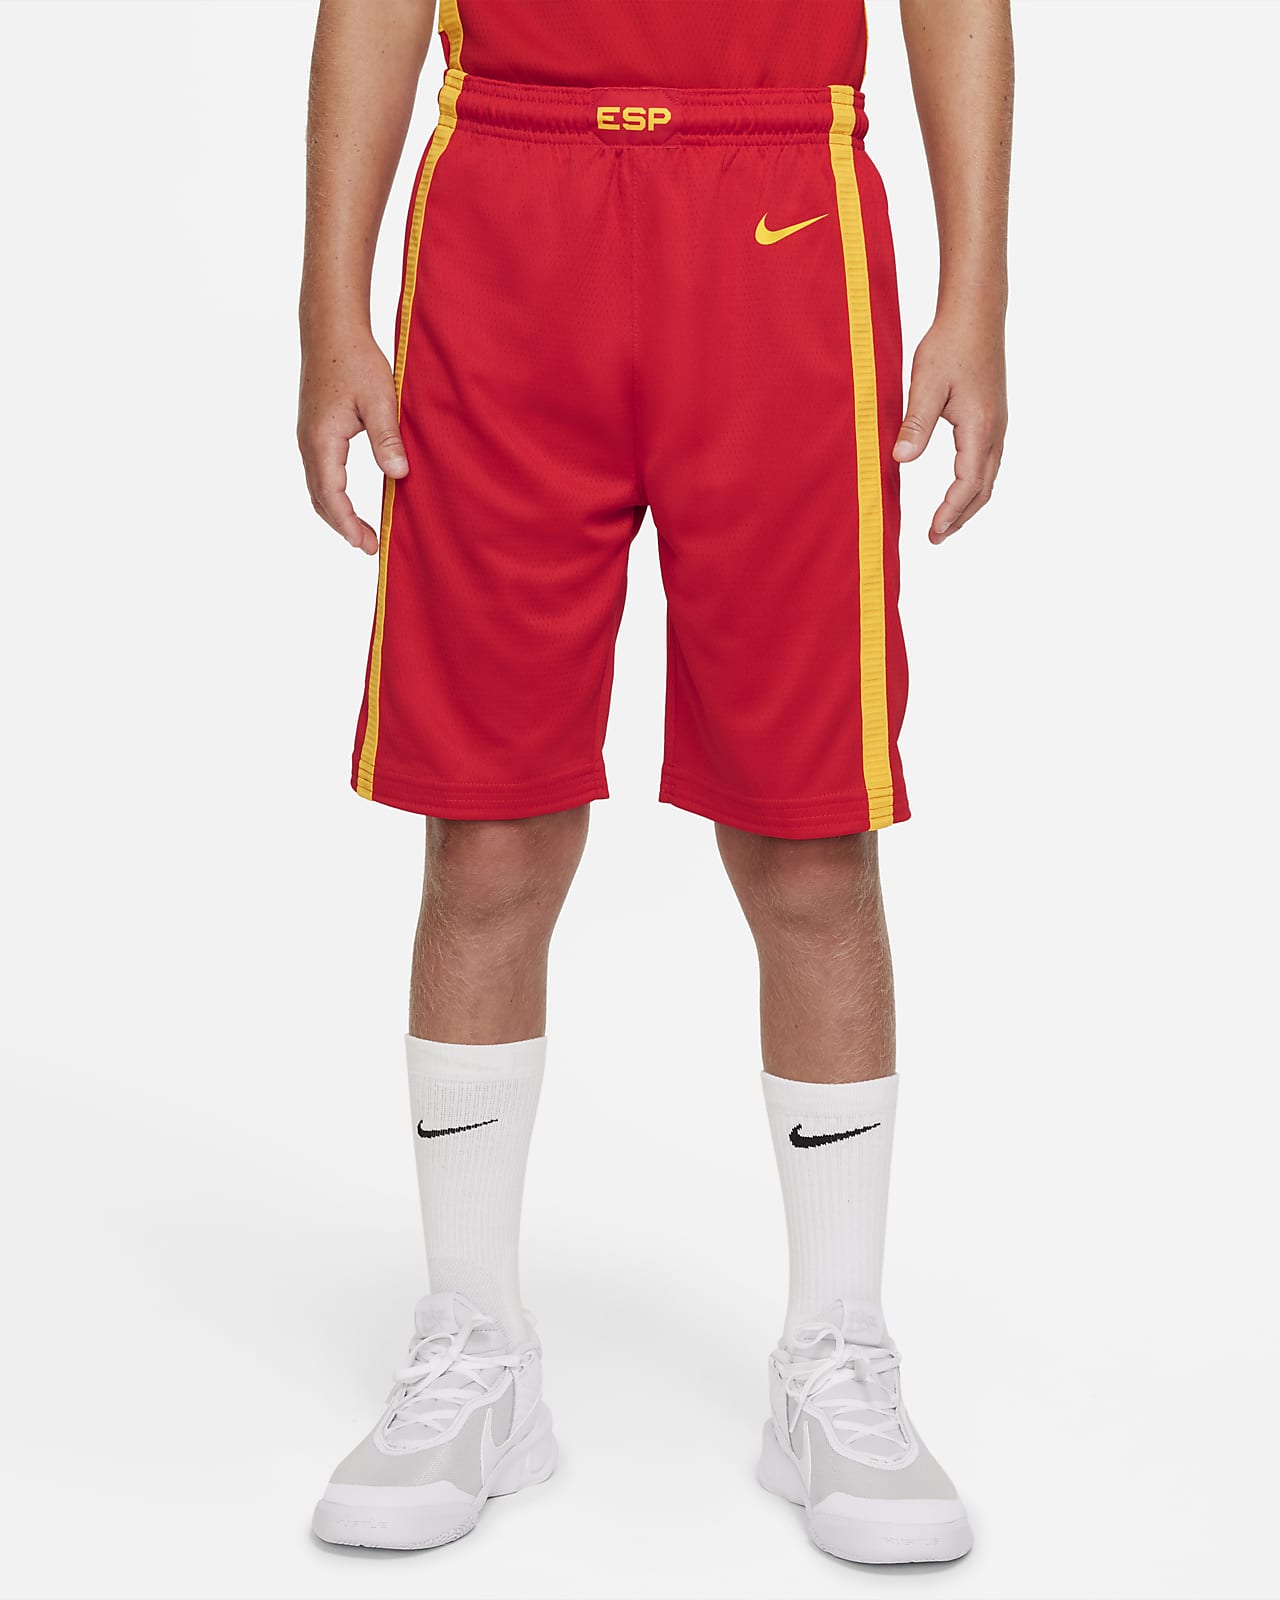 Shorts da basket Nike Spagna (Road) - Ragazzi